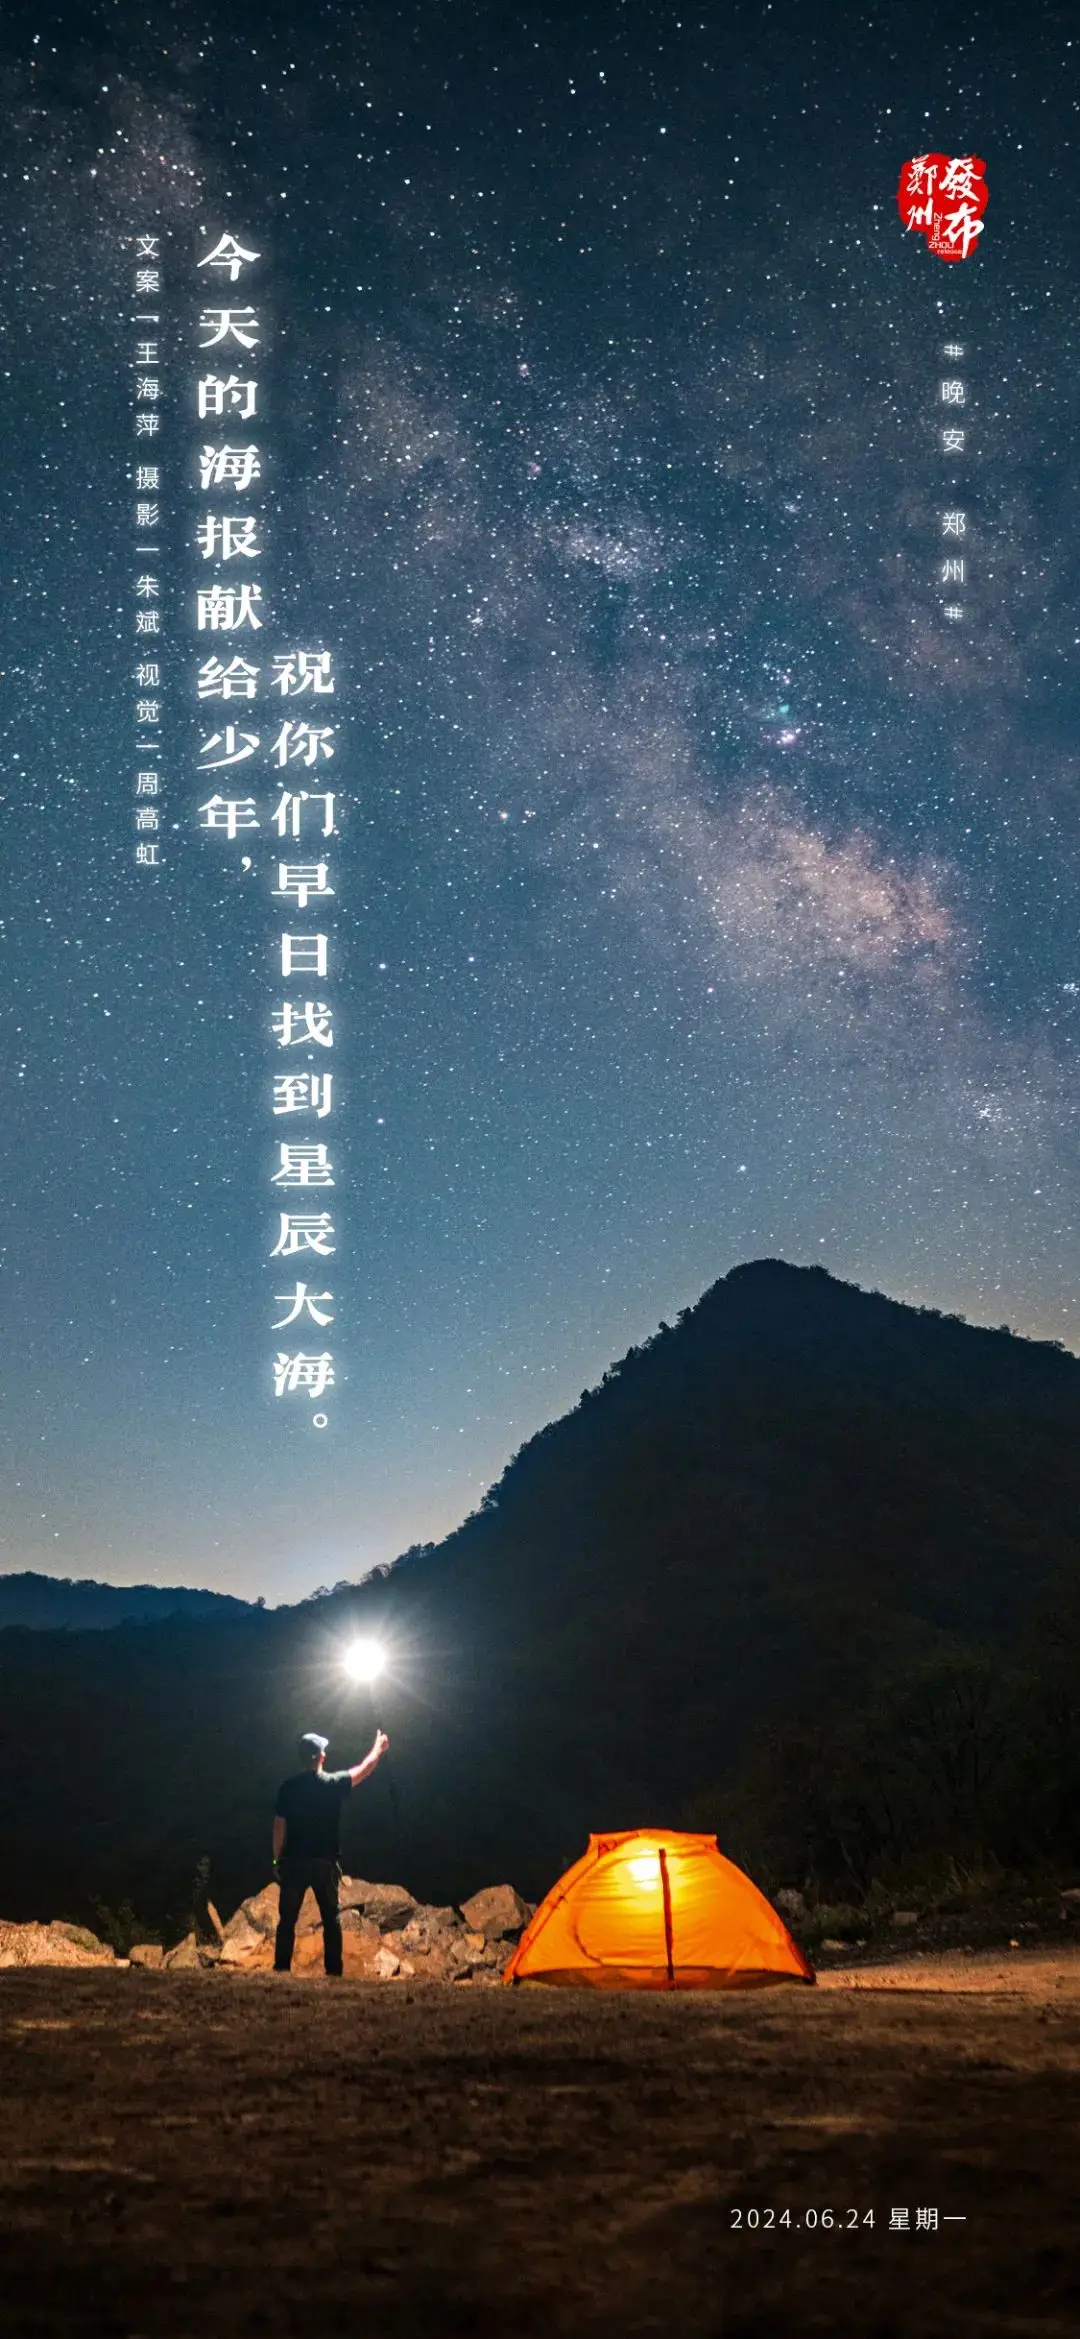 【晚安海報】今天的海報獻給少年，祝你們早日找到星辰大海。晚安，鄭州